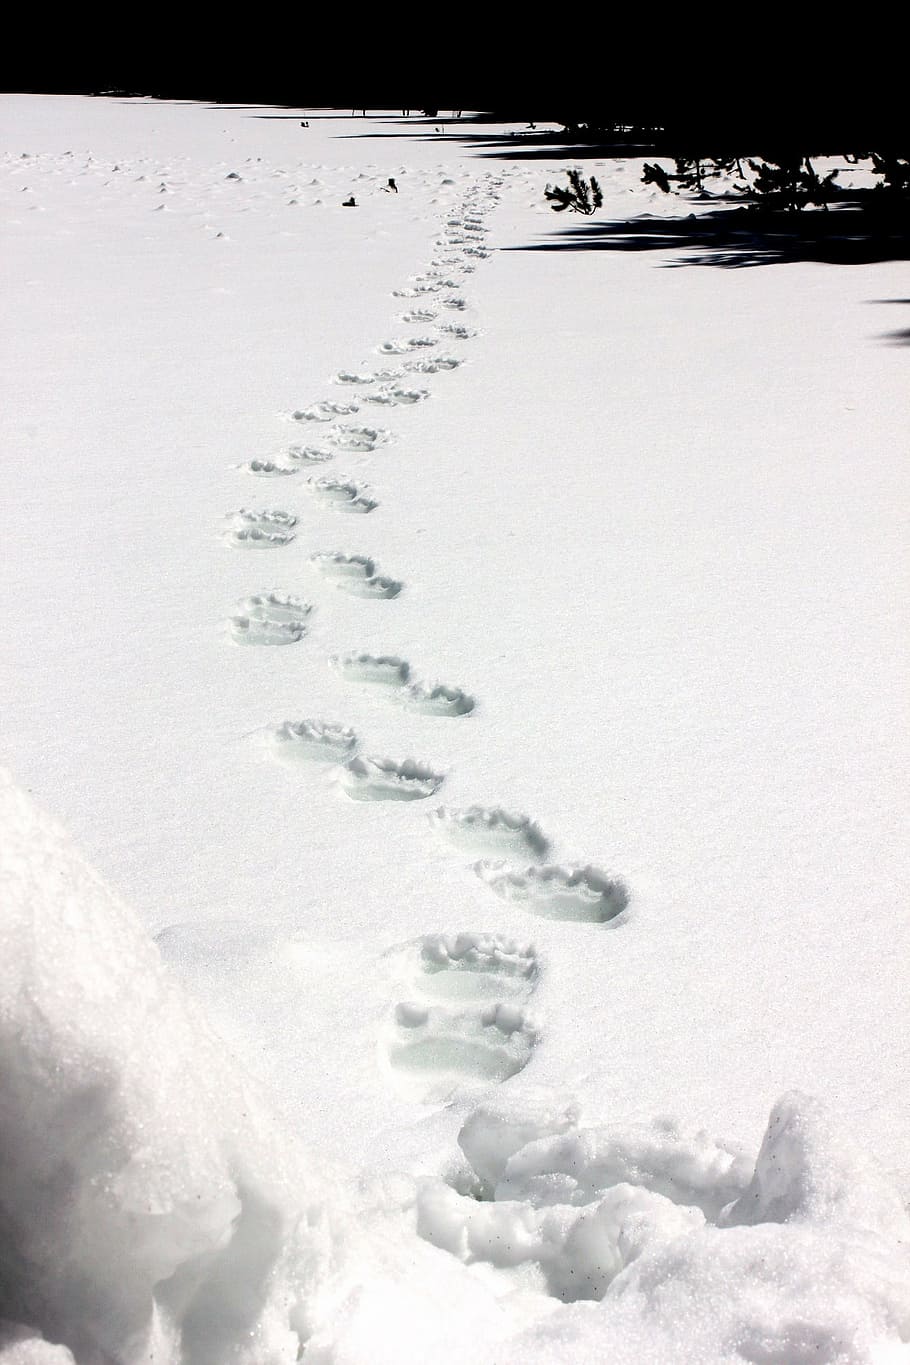 nieve, cubierto, lleno, pasos, huellas de oso grizzly, fauna, naturaleza, invierno, frío, huella